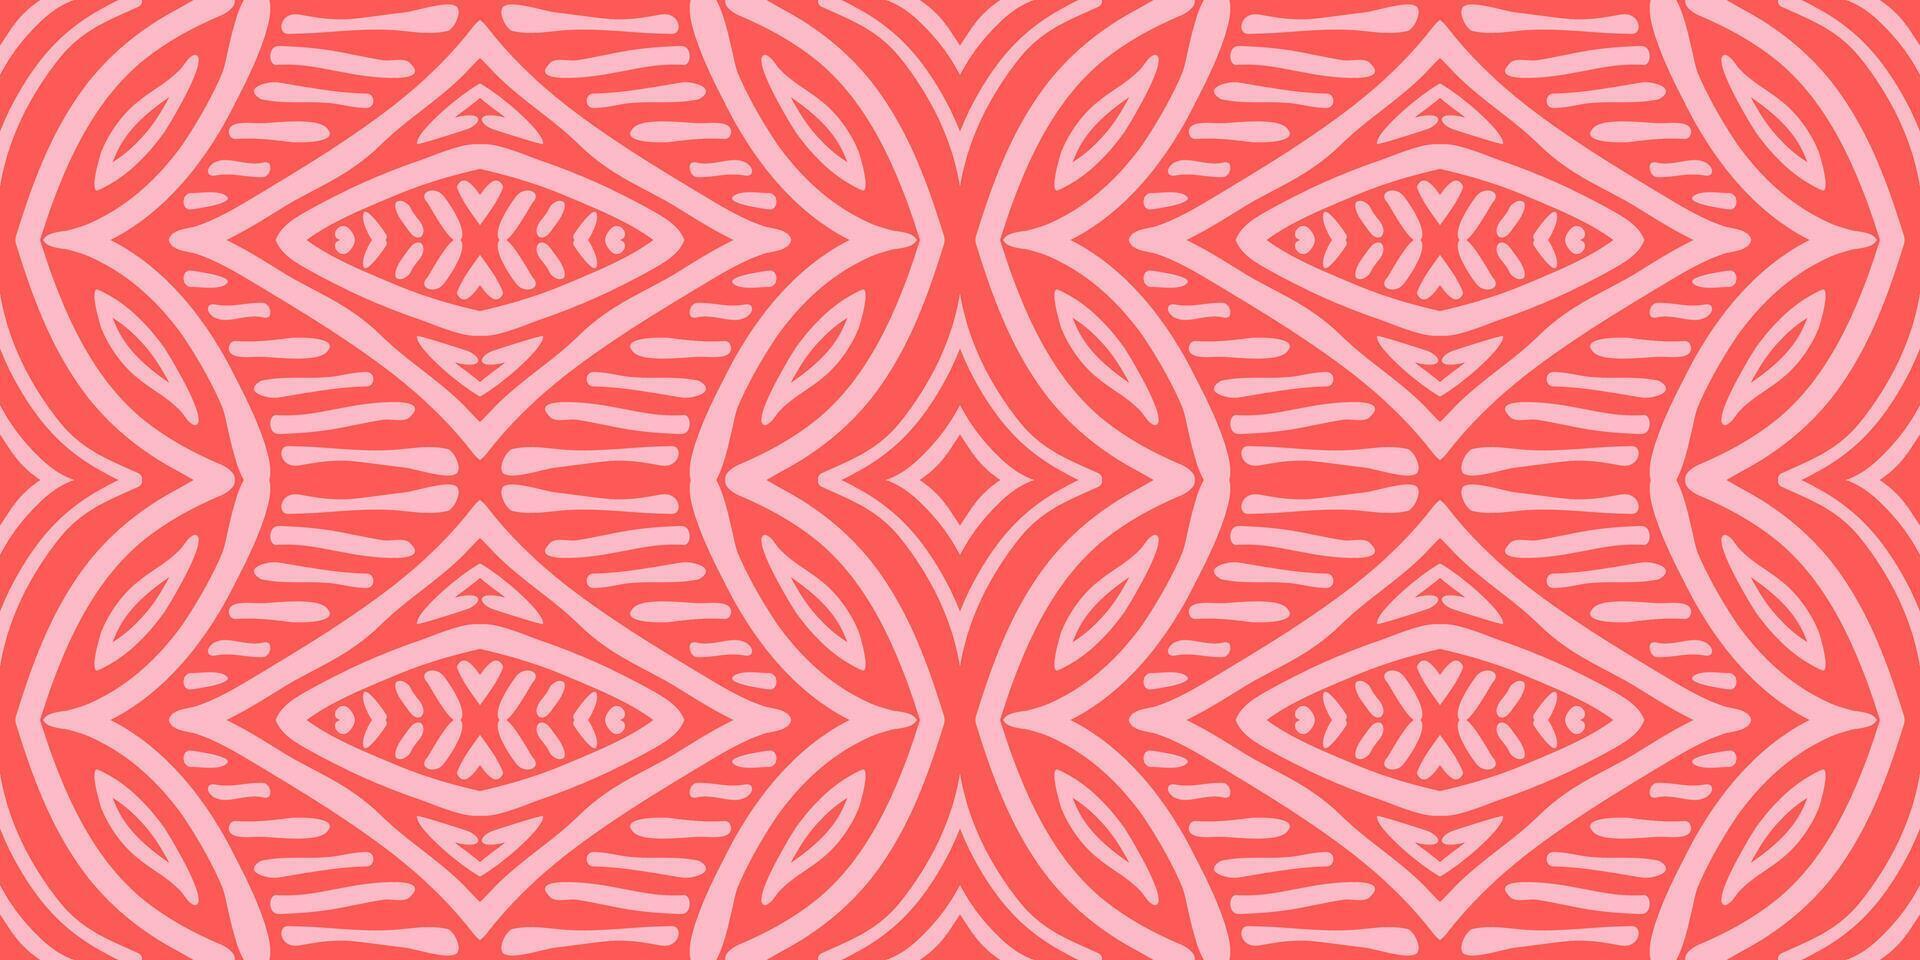 mano disegnato batik modello senza soluzione di continuità. geometrico gallone astratto illustrazione, sfondo. tribale etnico vettore struttura. azteco stile. popolare ricamo. indiano, scandinavo, africano tappeto, piastrella.